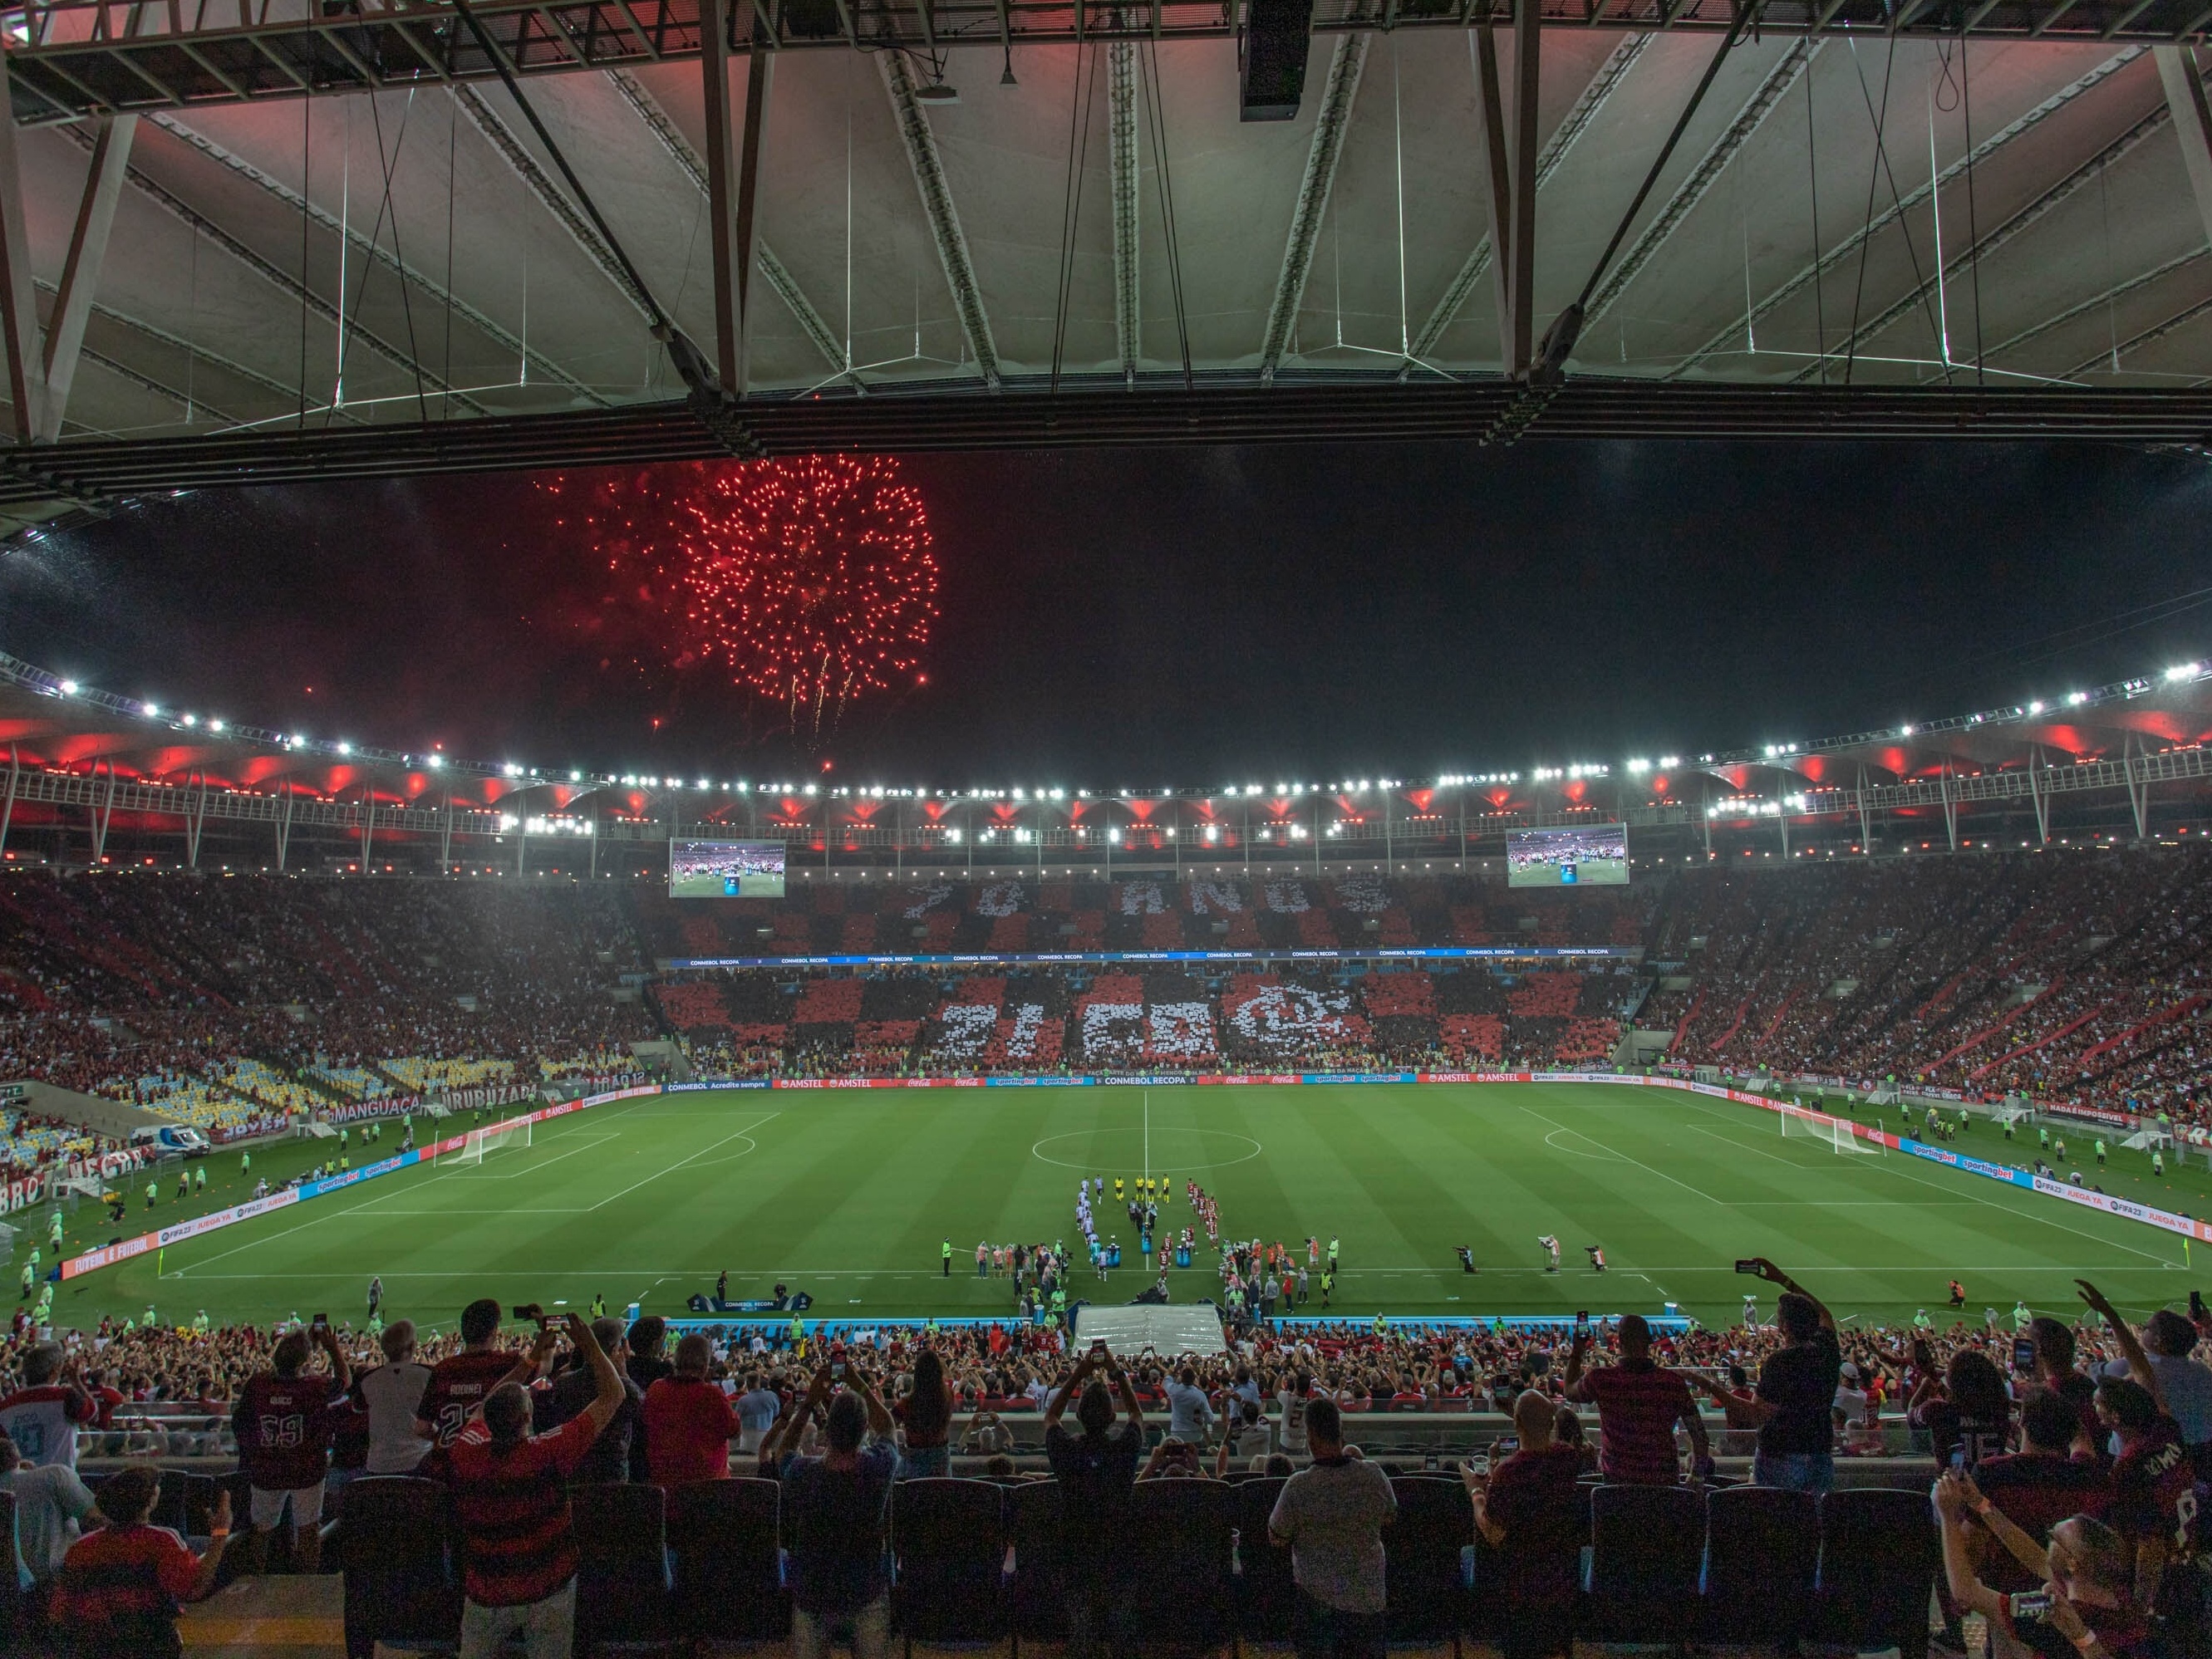 Sabe tudo do Flamengo no Maracanã? Prove no quiz dos 70 anos!, flamengo